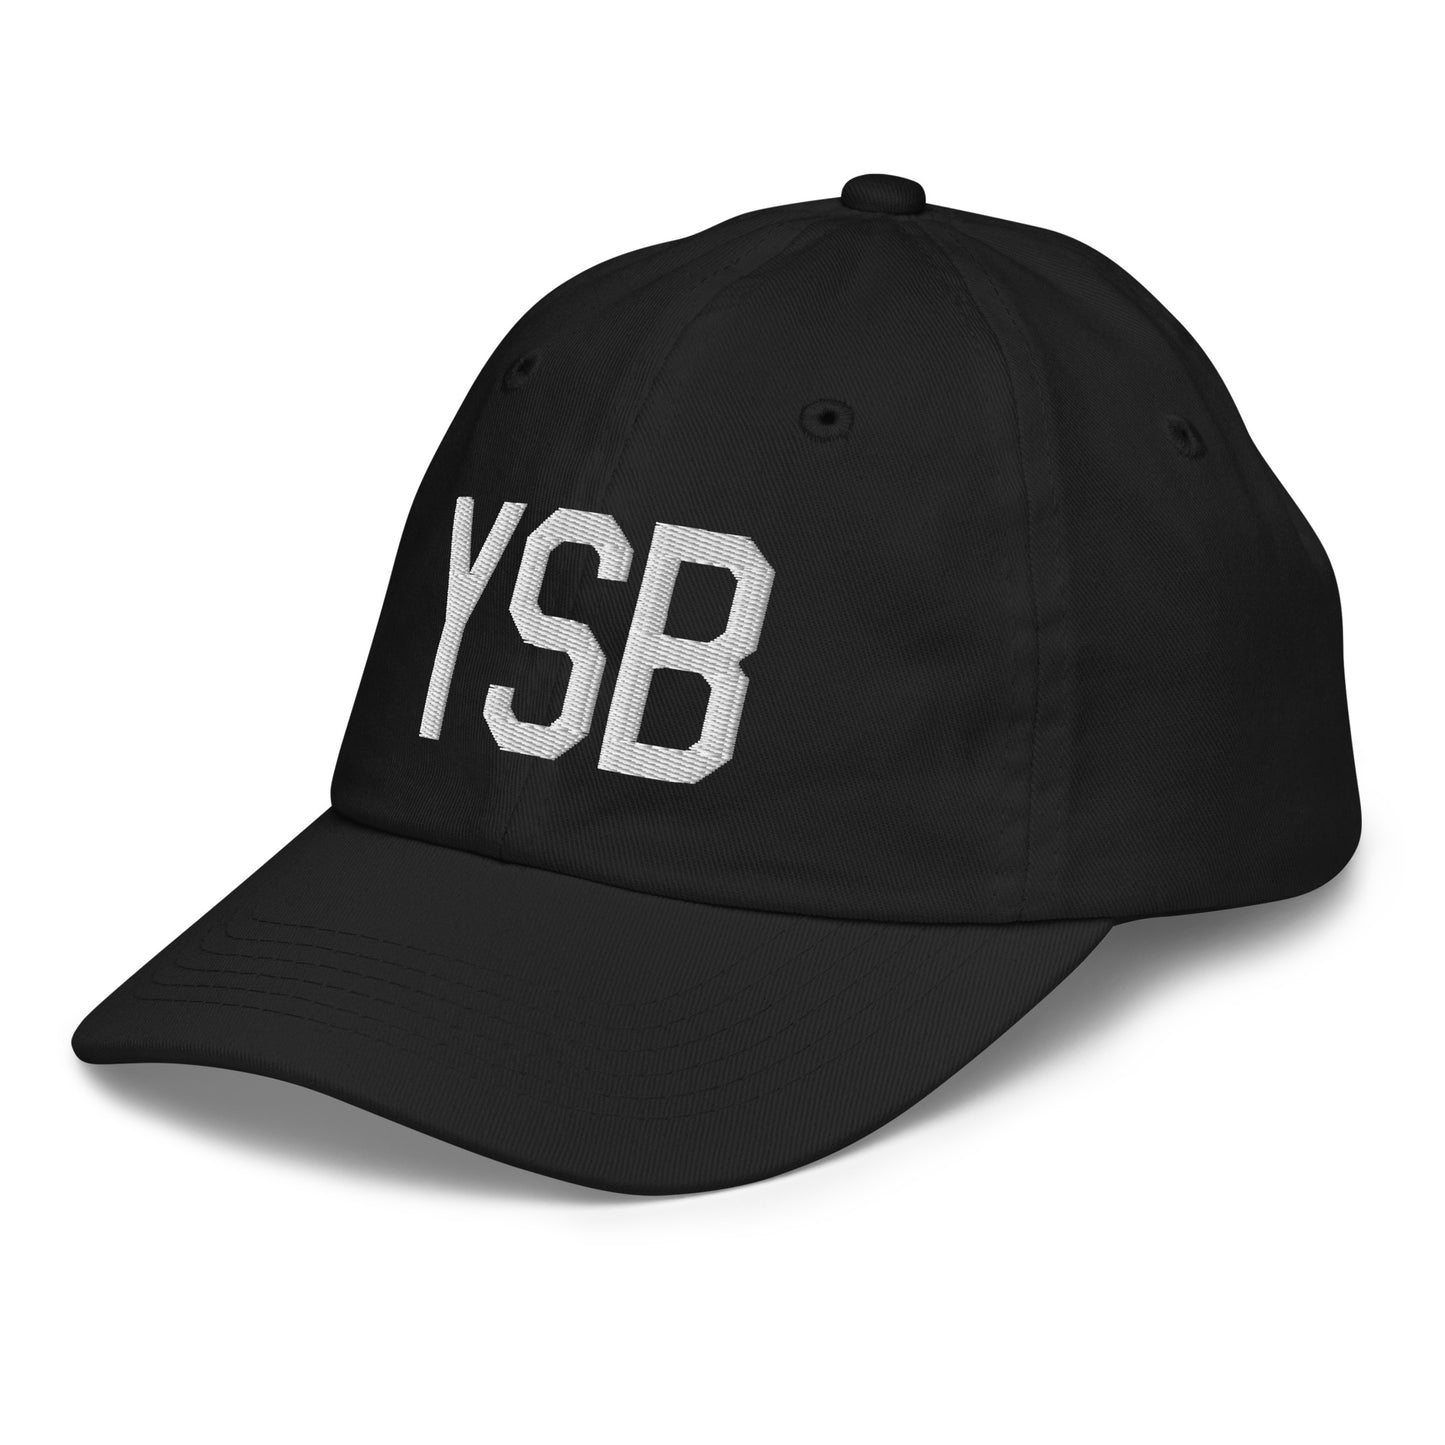 Airport Code Kid's Baseball Cap - White • YSB Sudbury • YHM Designs - Image 13